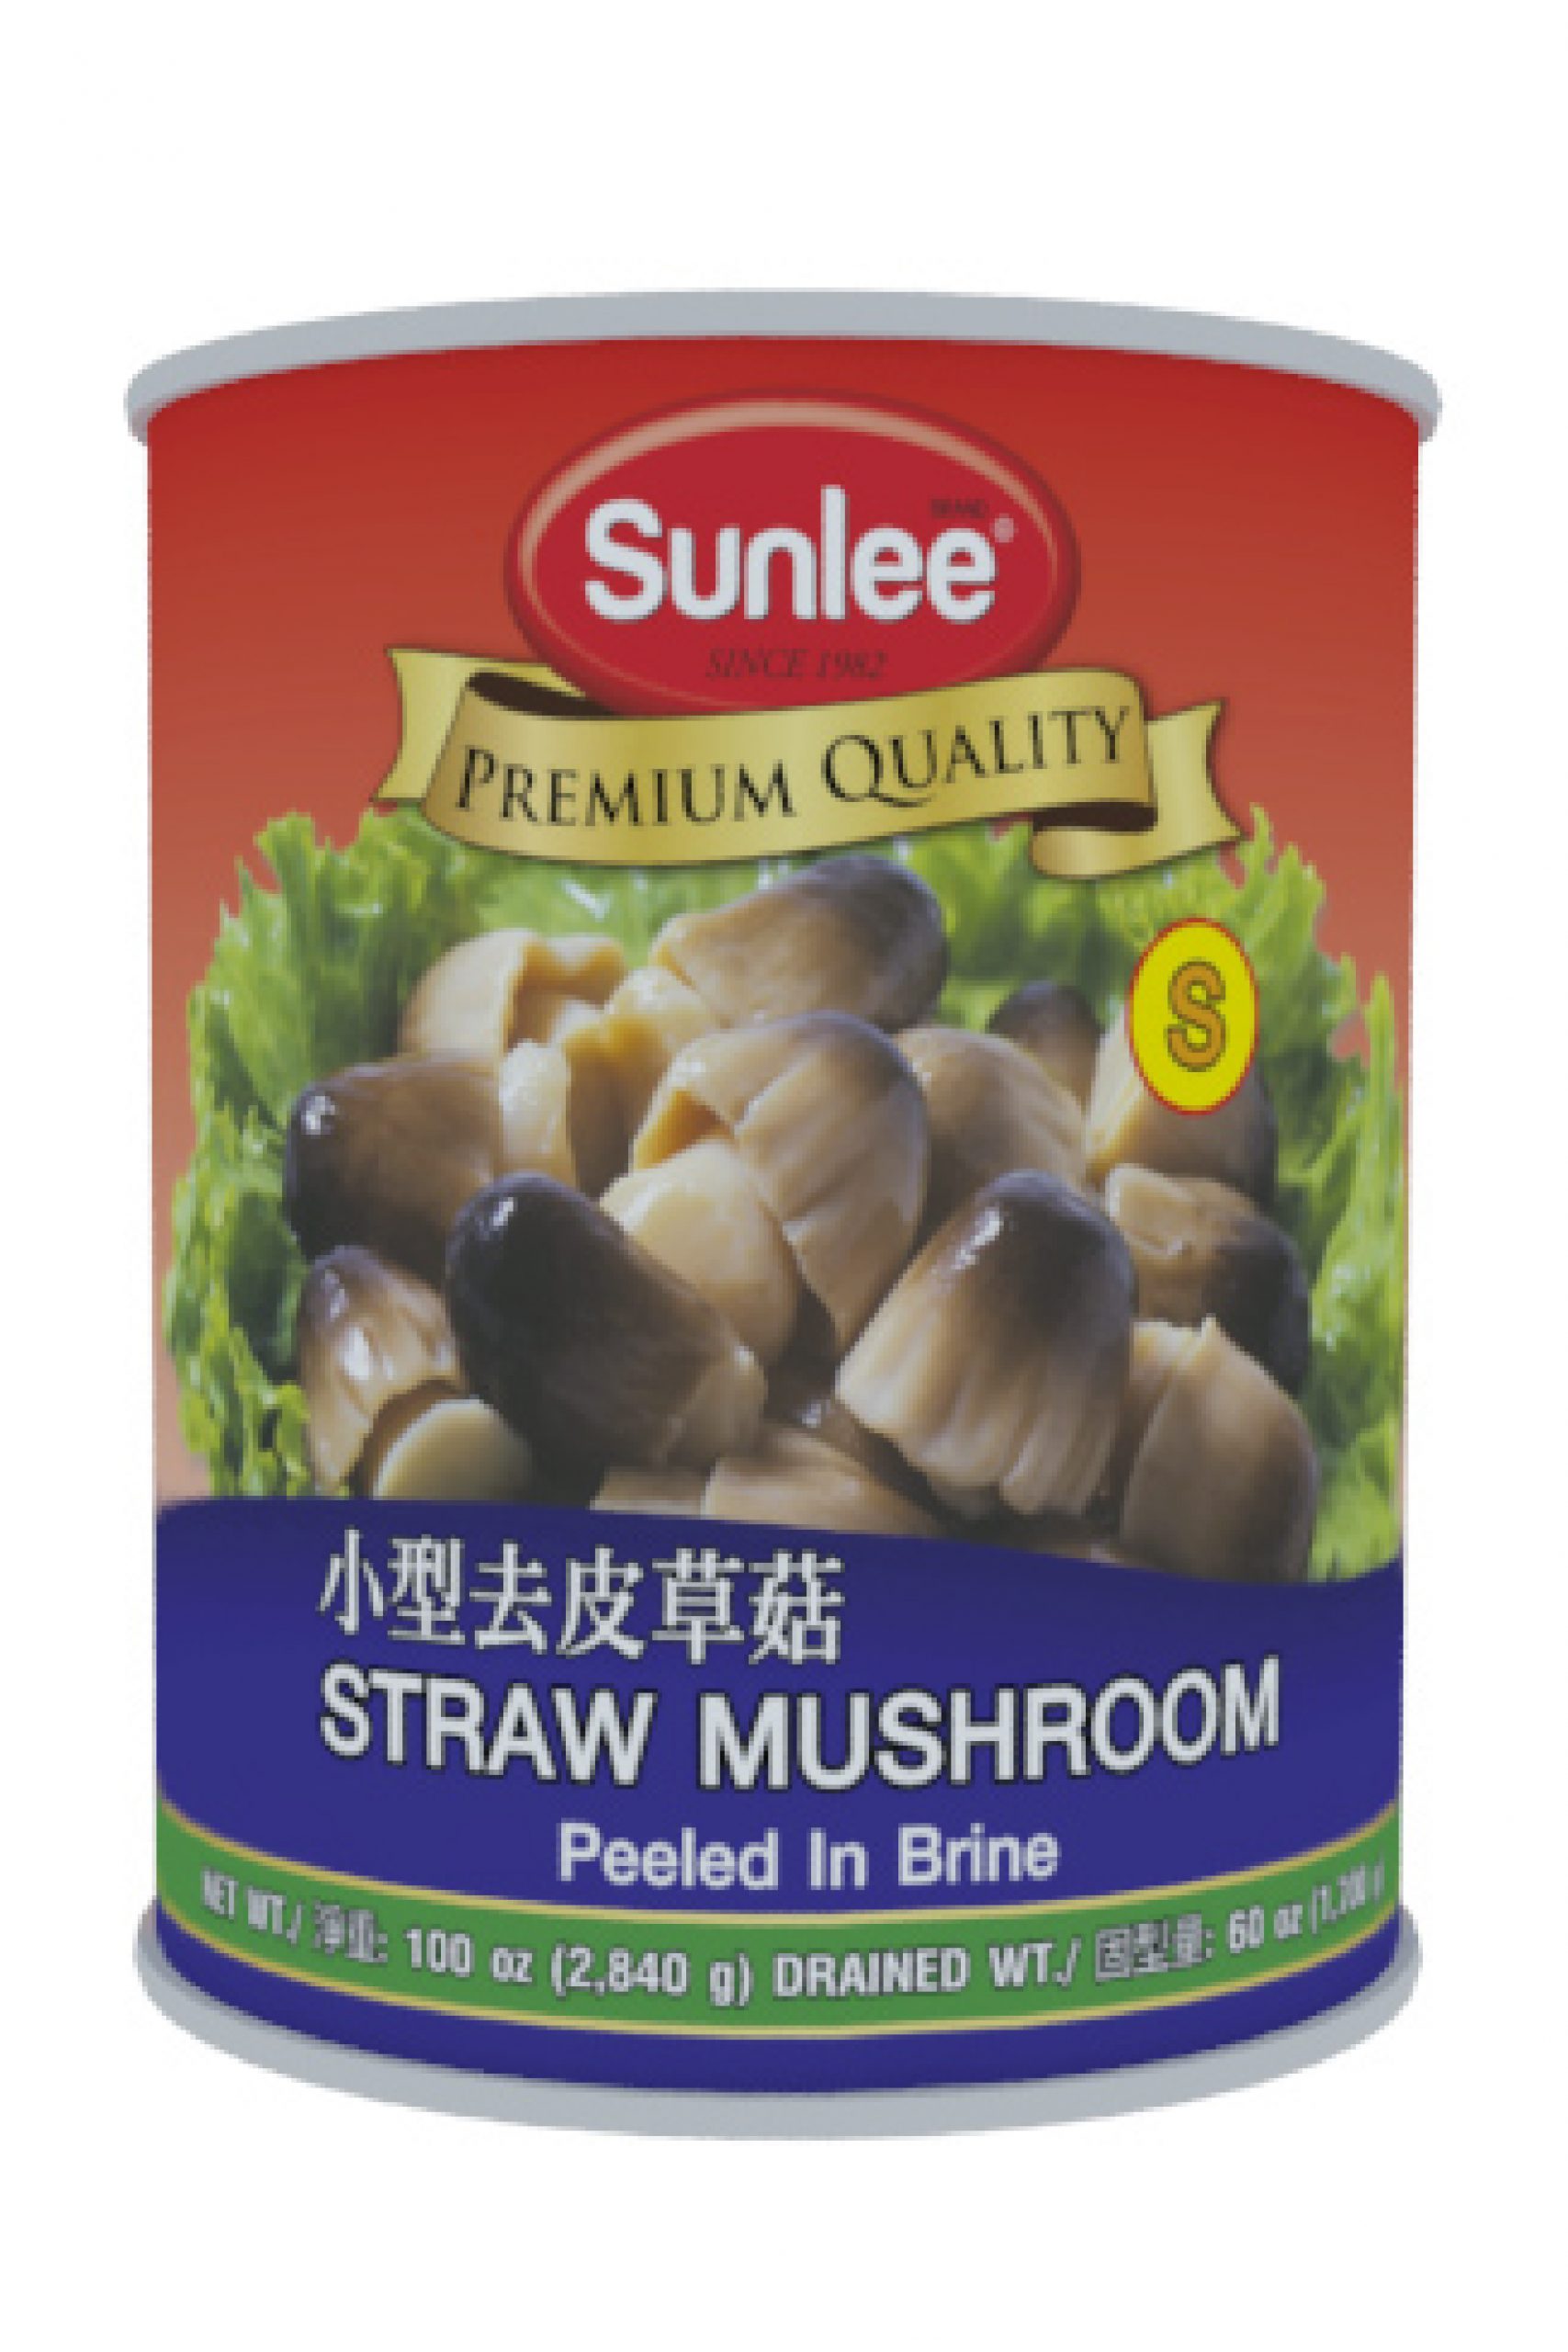 Sun Luck Straw Mushrooms, Whole Peeled, in Brine, Mushroom